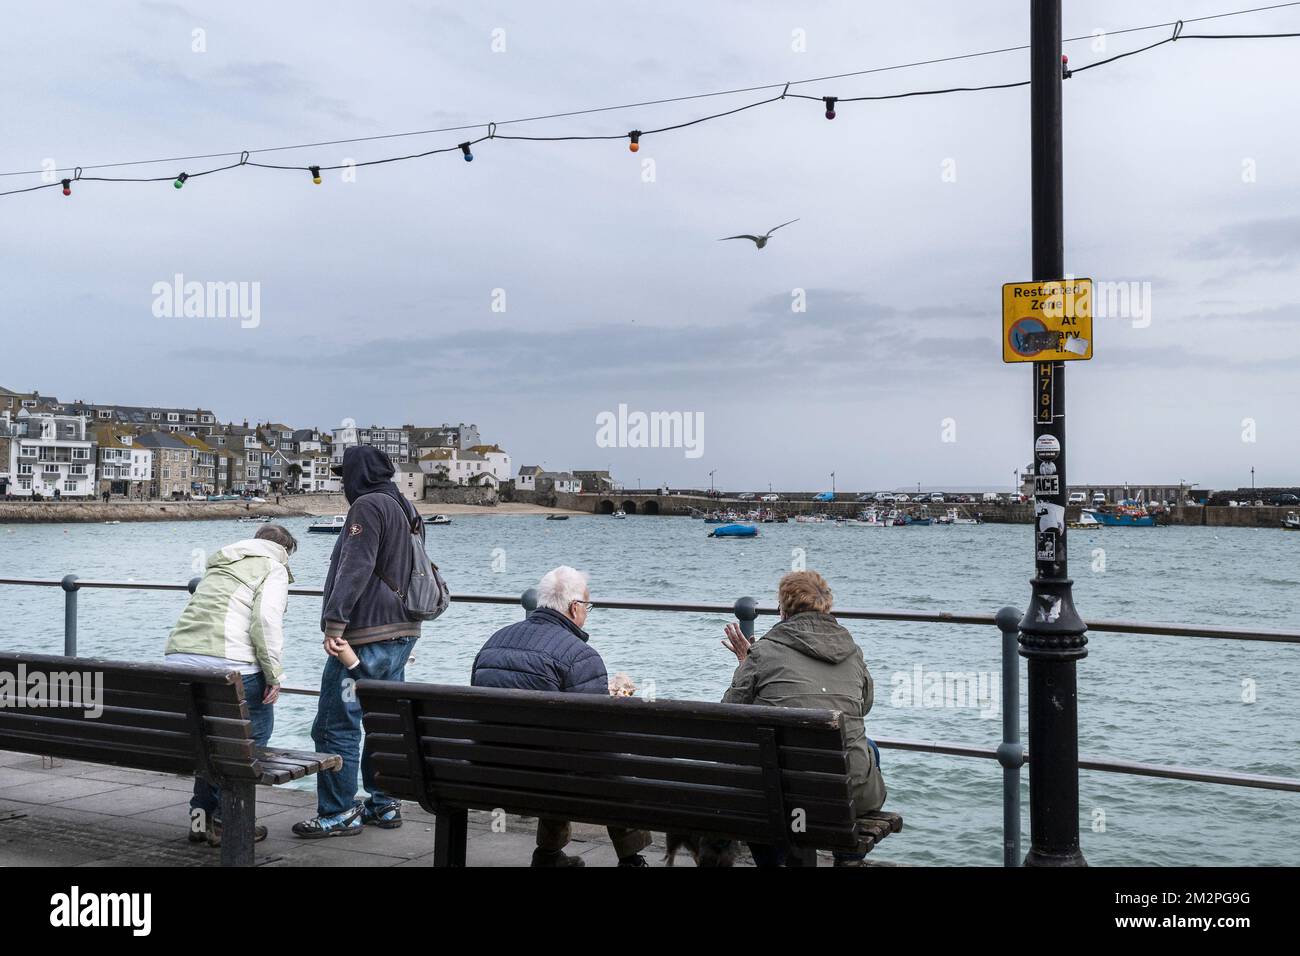 Meteo nel Regno Unito. I visitatori seduti su una panchina che si affaccia sul porto fino al Molo di Smeatons in una giornata piovosa e fredda nella storica cittadina costiera di Foto Stock